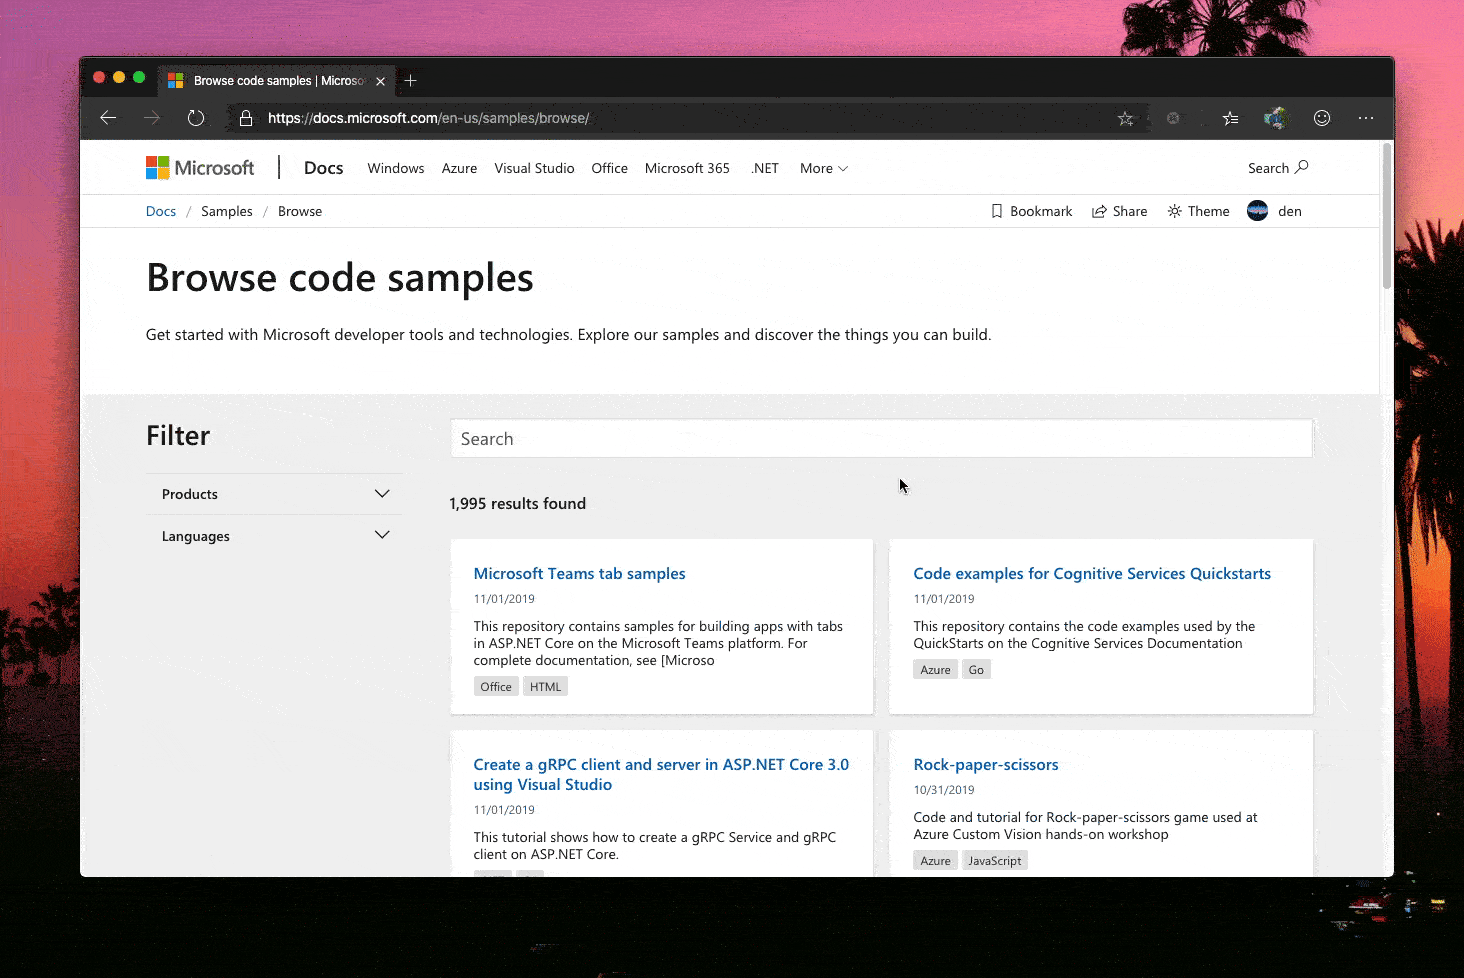 Katalog für Codebeispiele